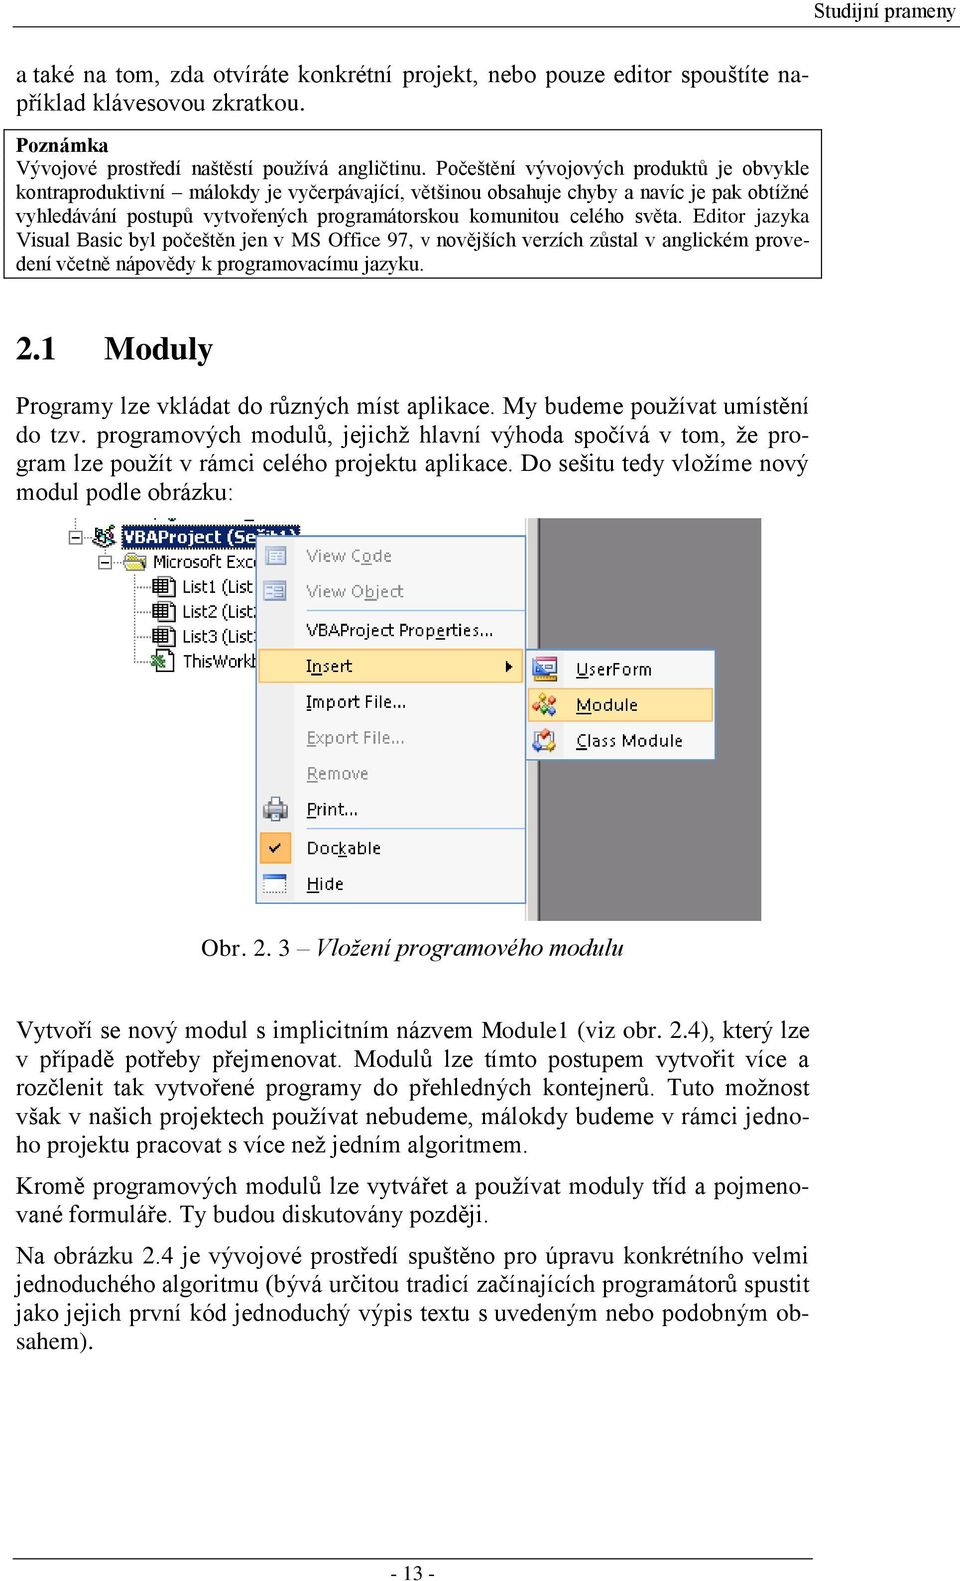 světa. Editor jazyka Visual Basic byl počeštěn jen v MS Office 97, v novějších verzích zůstal v anglickém provedení včetně nápovědy k programovacímu jazyku. 2.